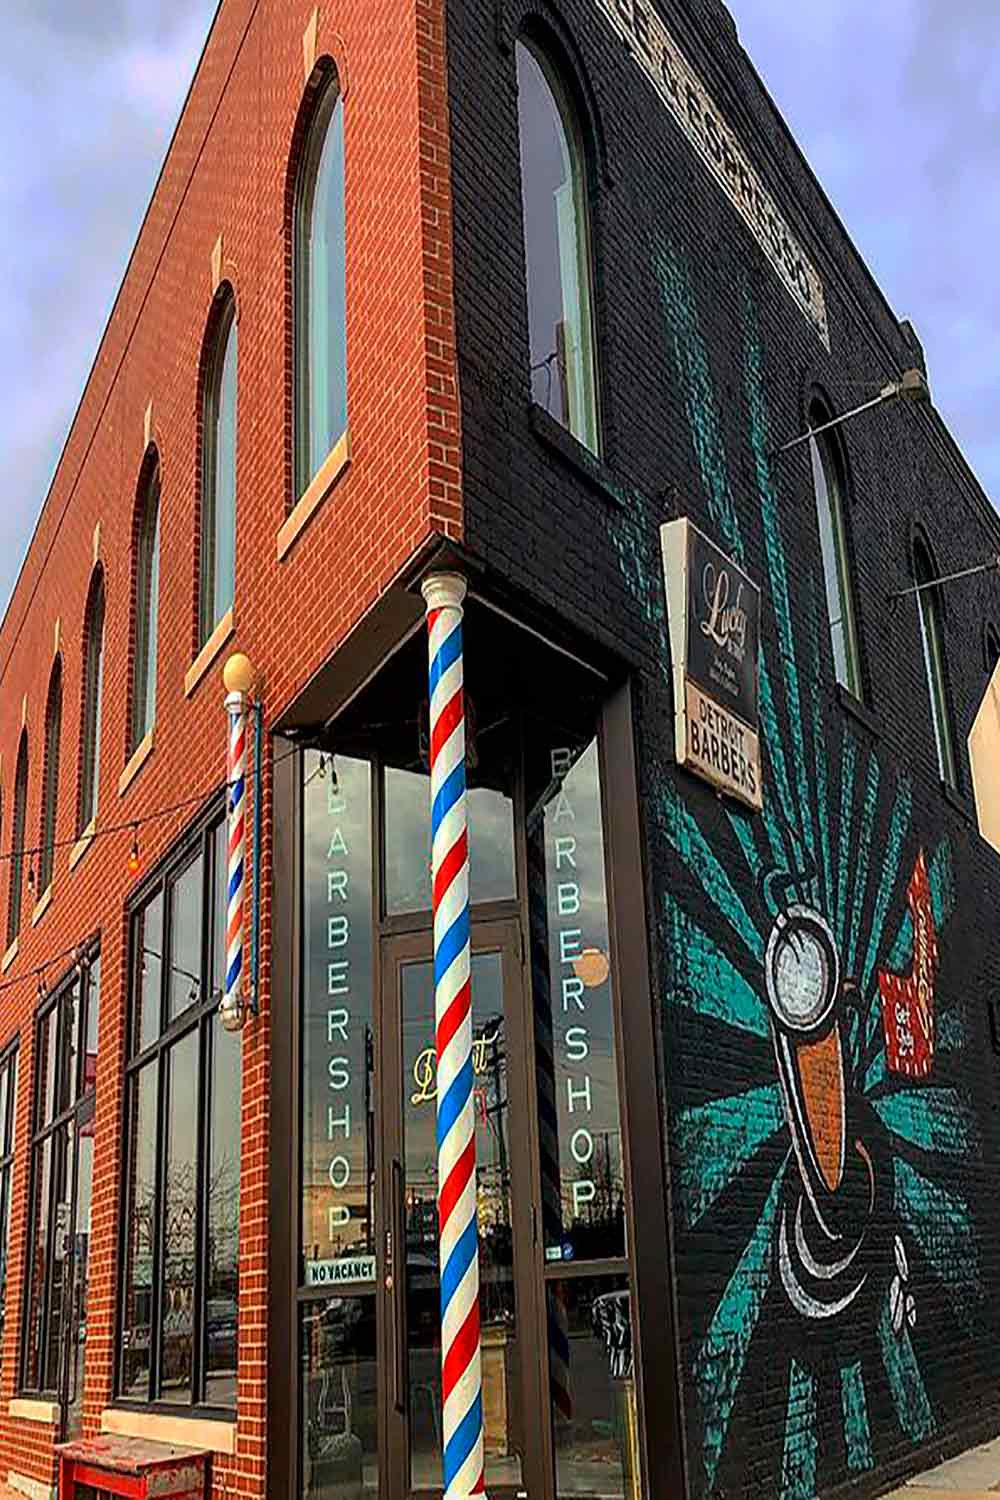 Detroit Barber Co. Barbershop & Brand 5